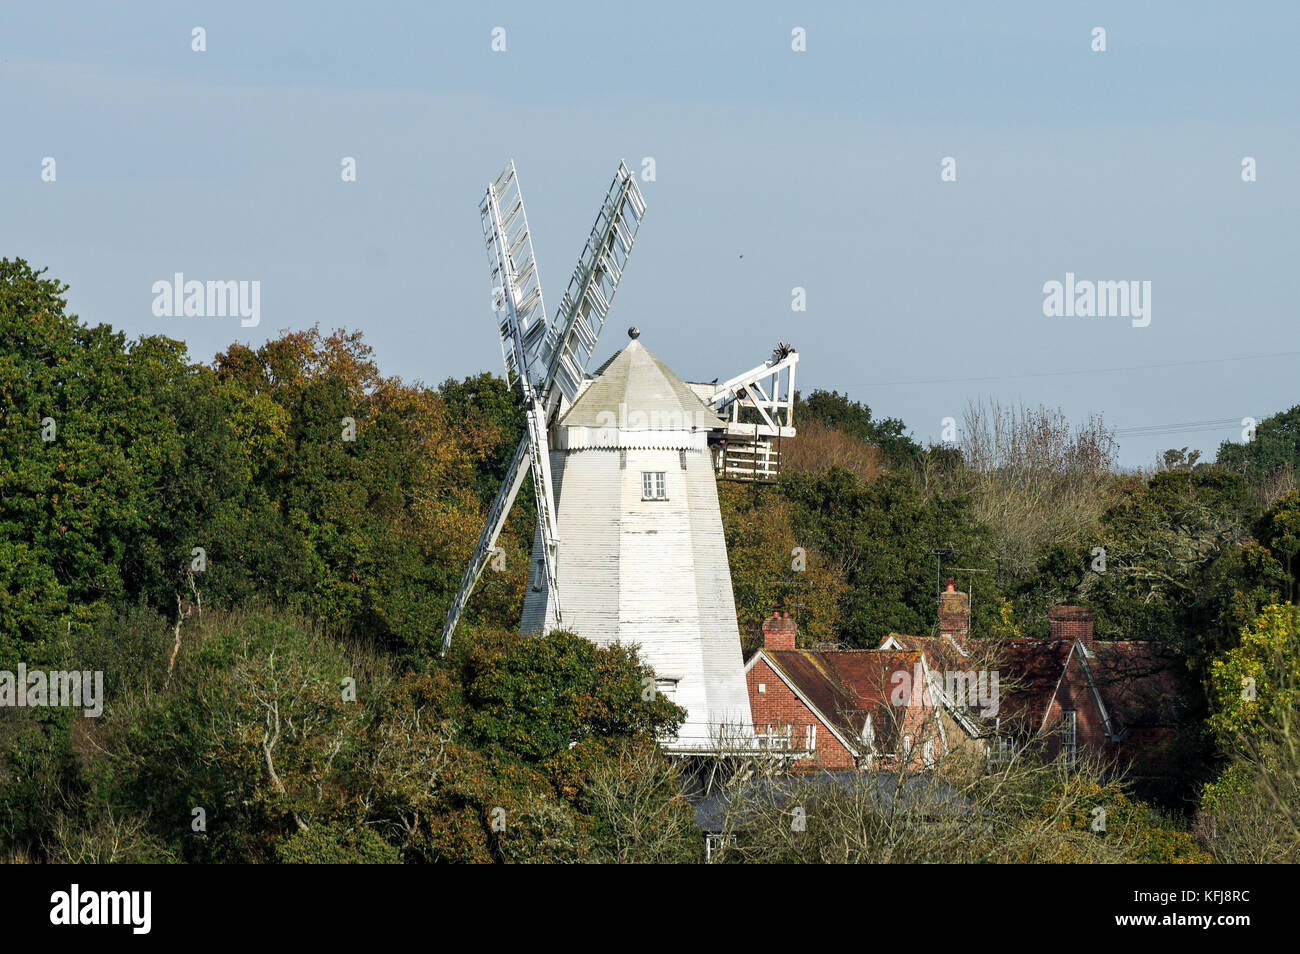 King's Mill ou Vincent's Mill dans la région de Shipley - West Sussex, Angleterre Banque D'Images